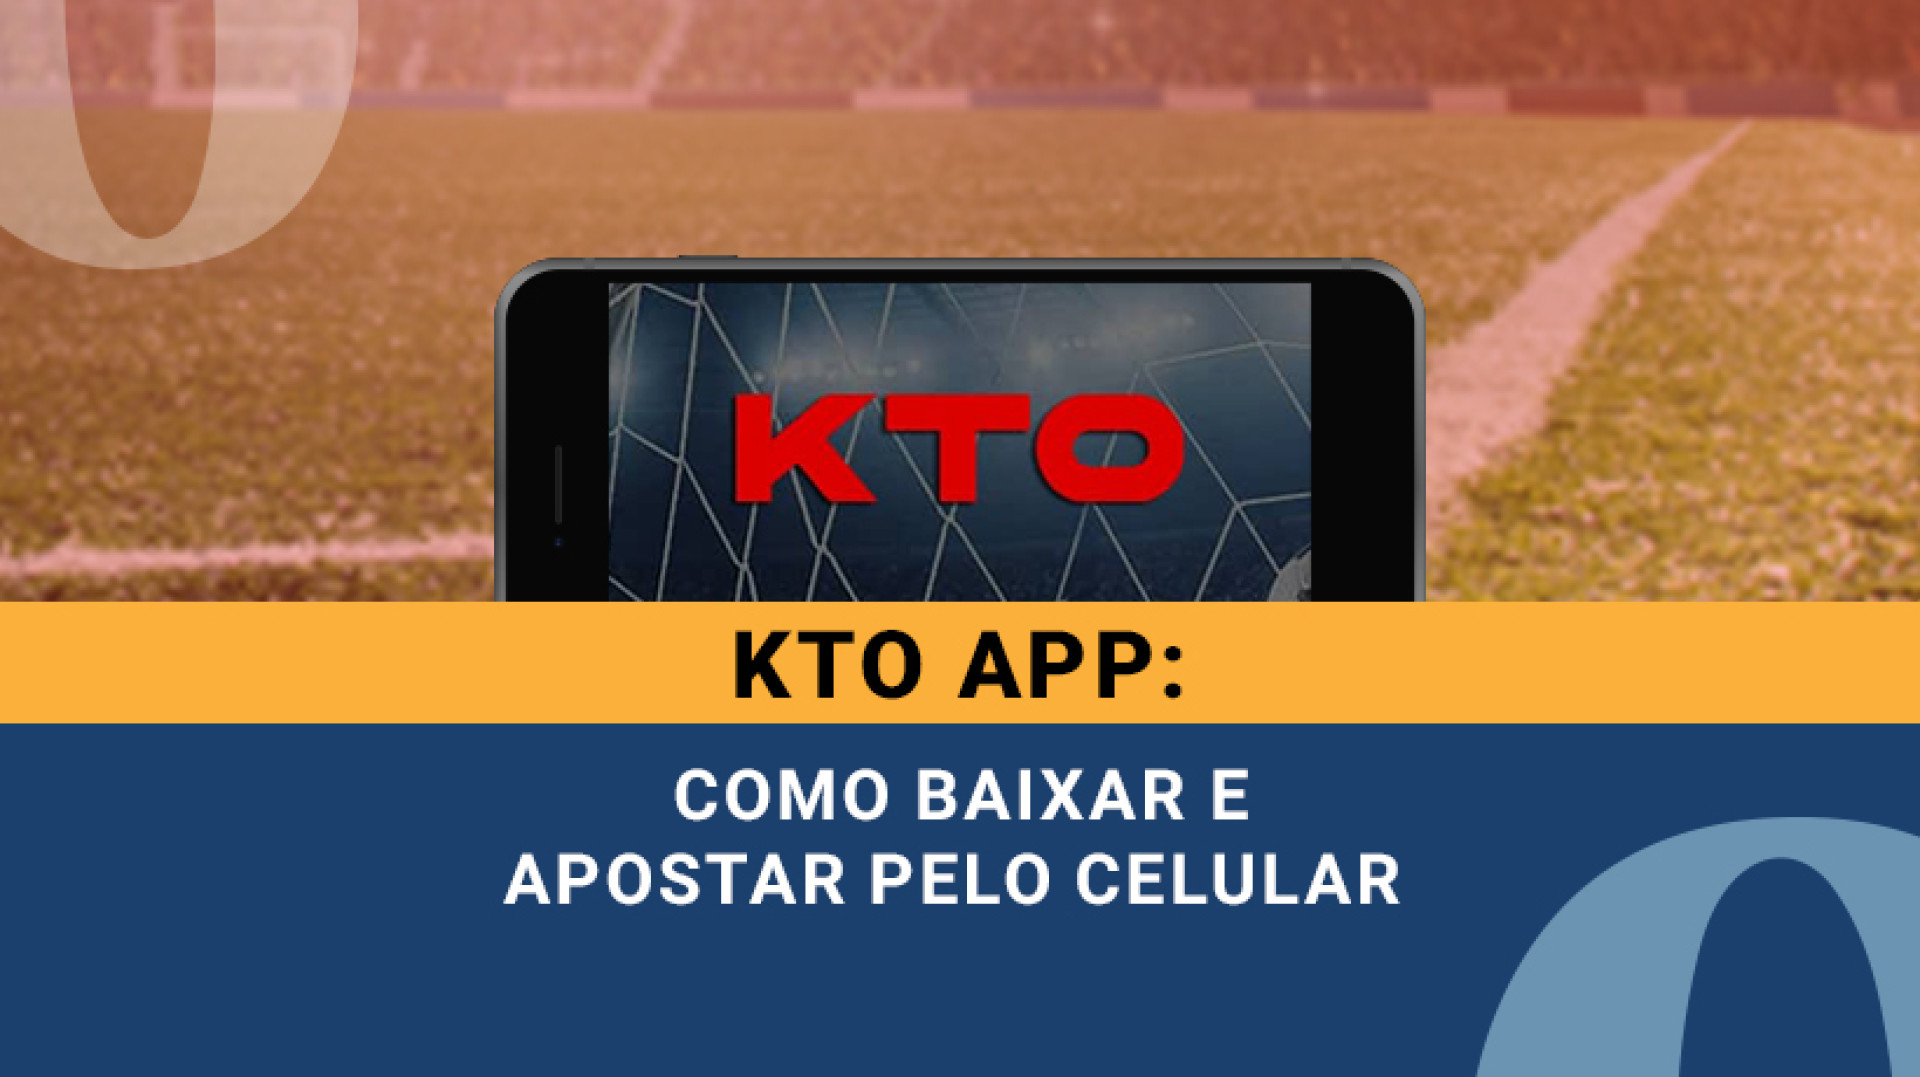 App KTO